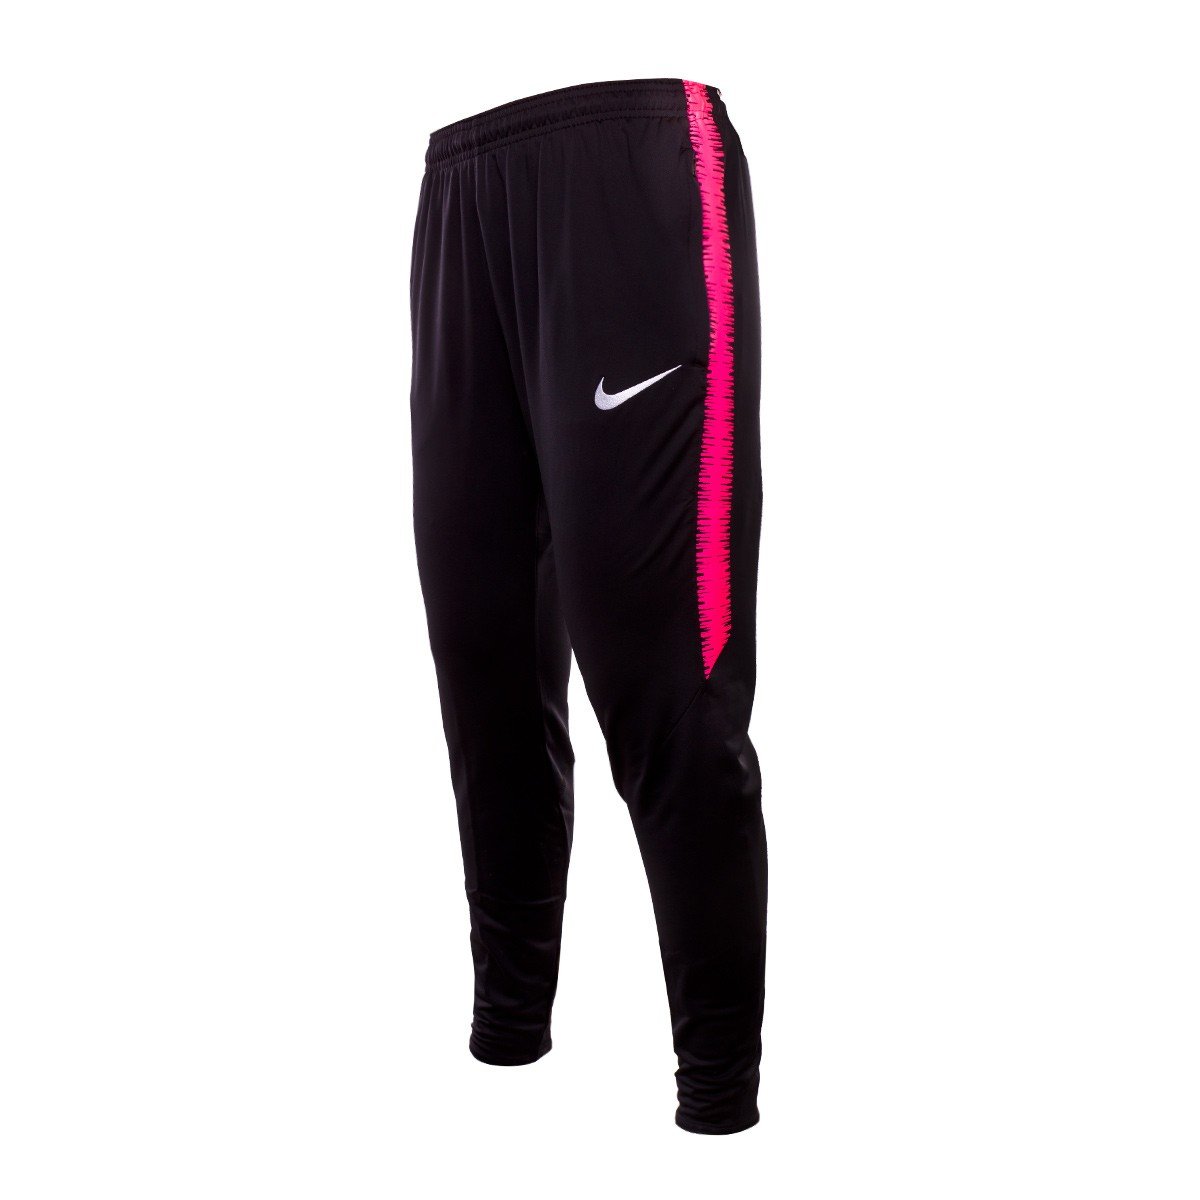 Трико песни. Трико Nike Football Club. Тренировочные штаны Nike для футбола 2014. Спорт трико Venom. Футбольное трико зауженные.